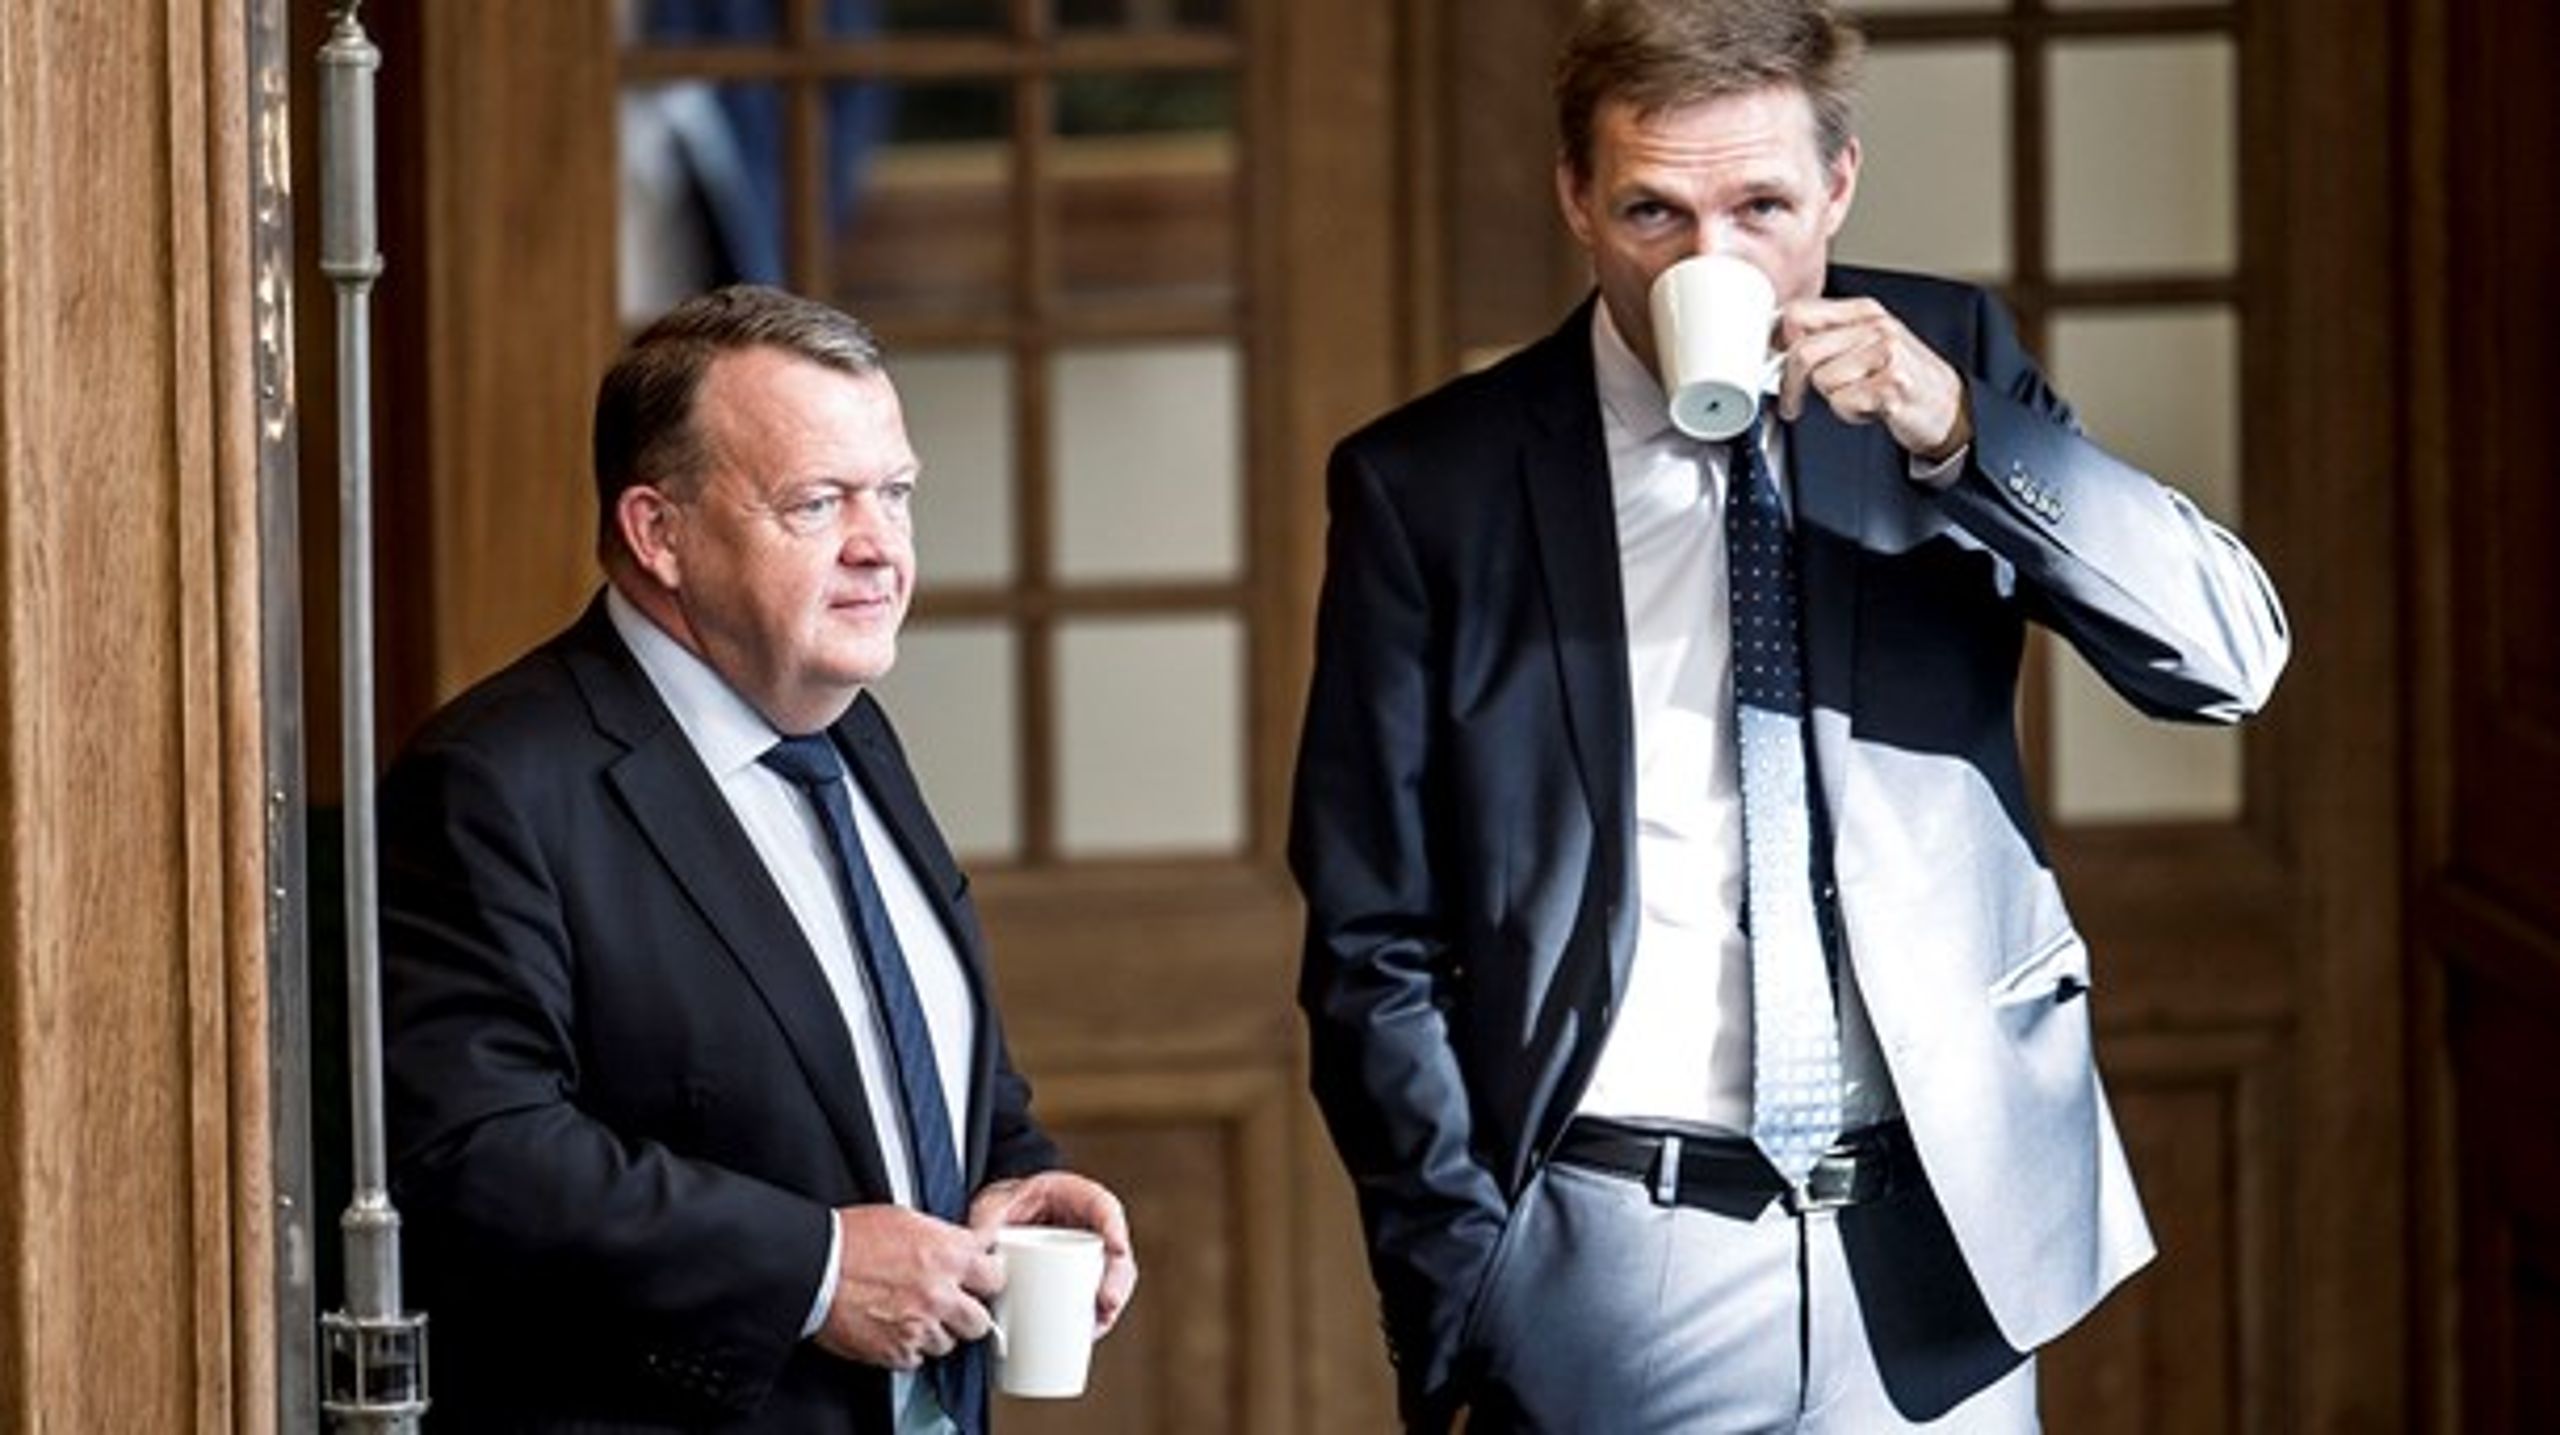 Meget er de enige om, men ikke alt. Lars Løkke Rasmussen vil nu forlænge sin første trepartsaftale om jobforløb for flygtninge, som Kristian Thulesen Dahl tidligere har forsøgt at presse regeringen til at opgive.